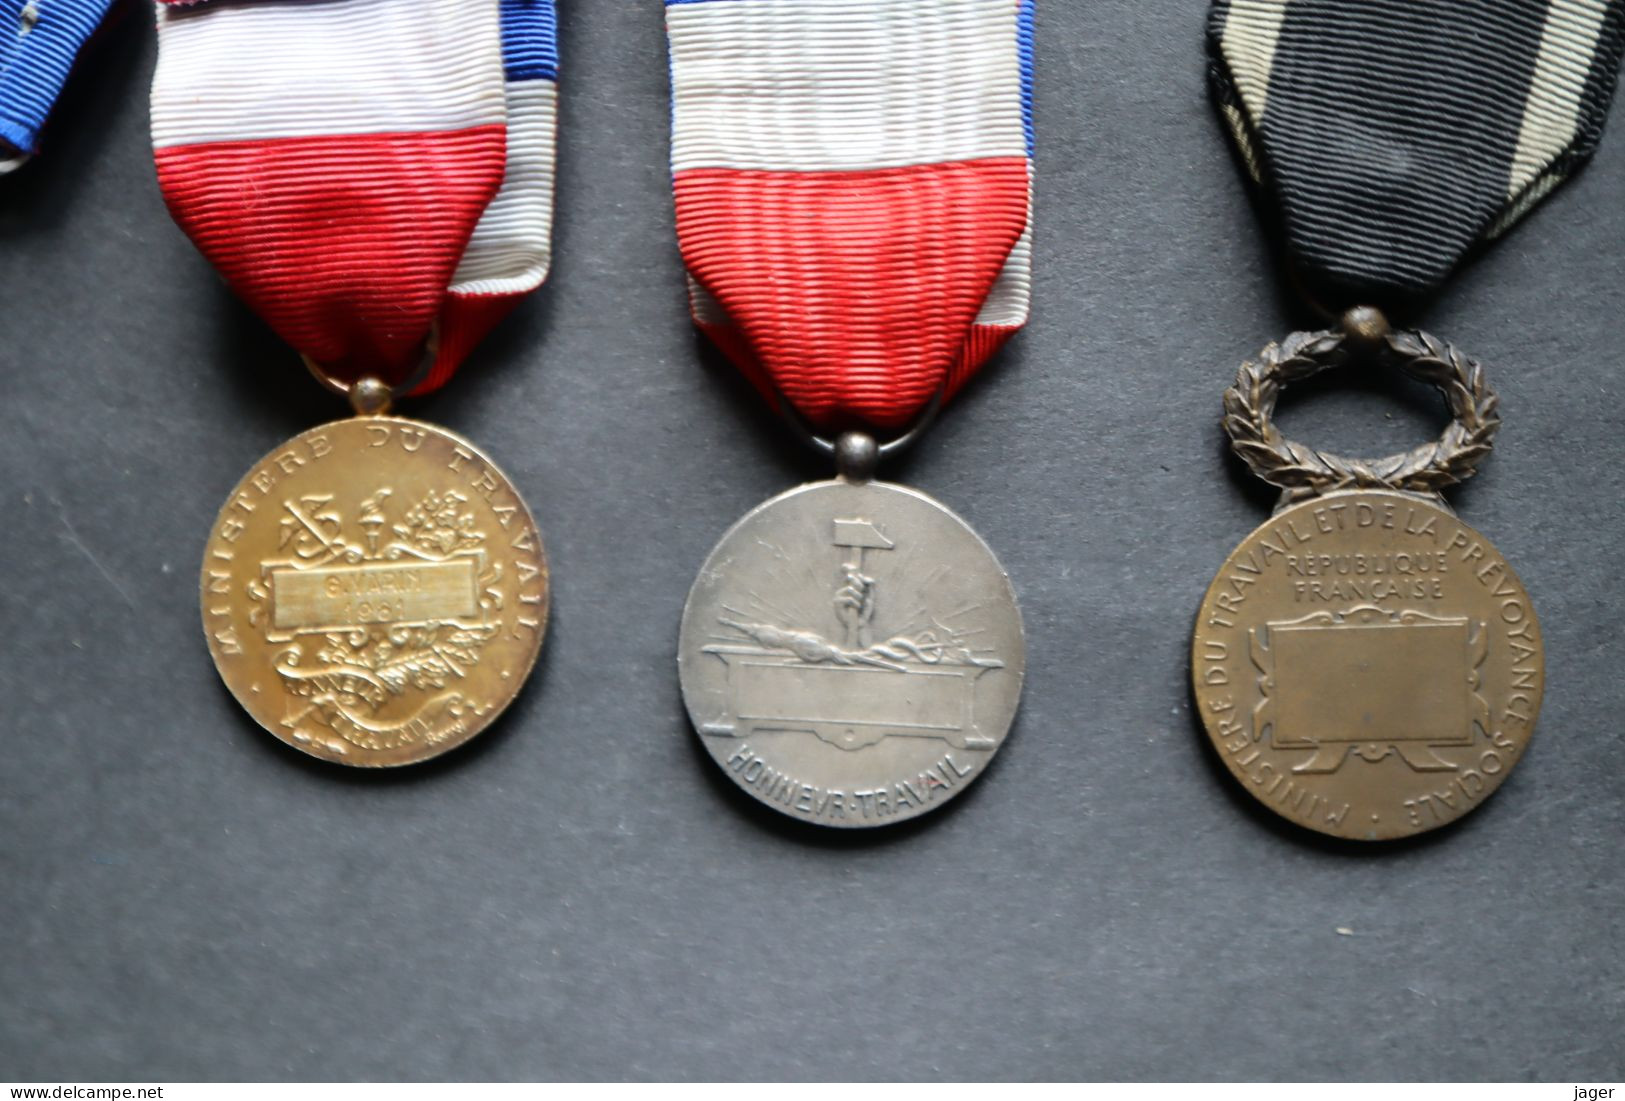 Lot de médailles anciennes certaines attribuées ou en argent